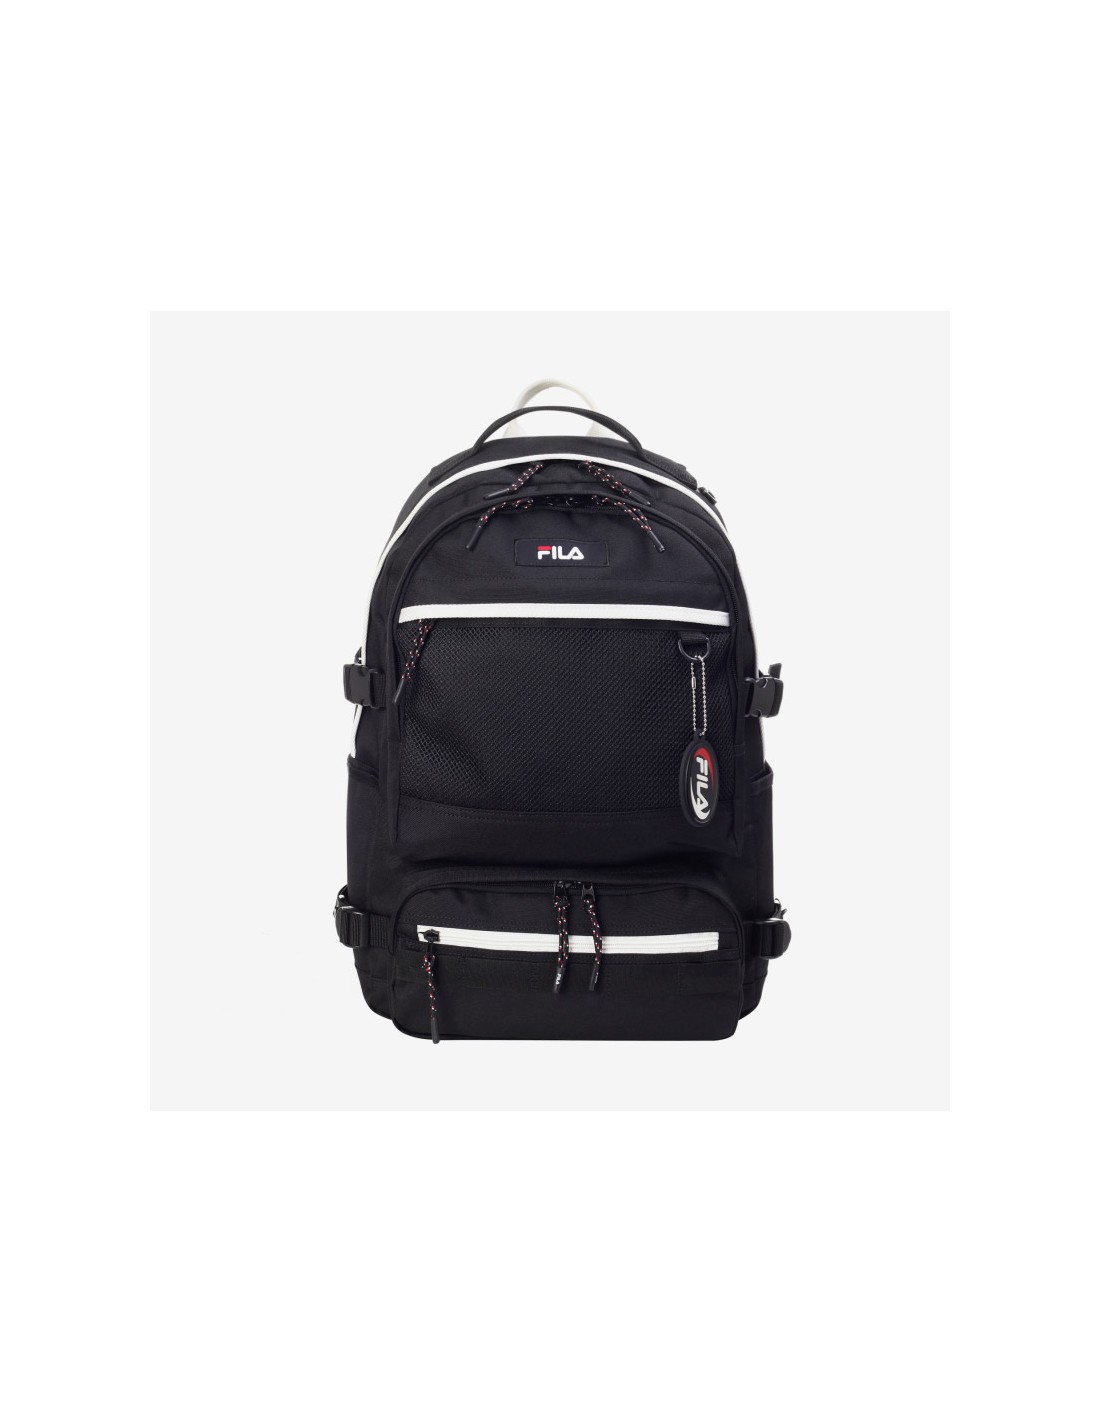 Buy > fila backpack bts > in stock